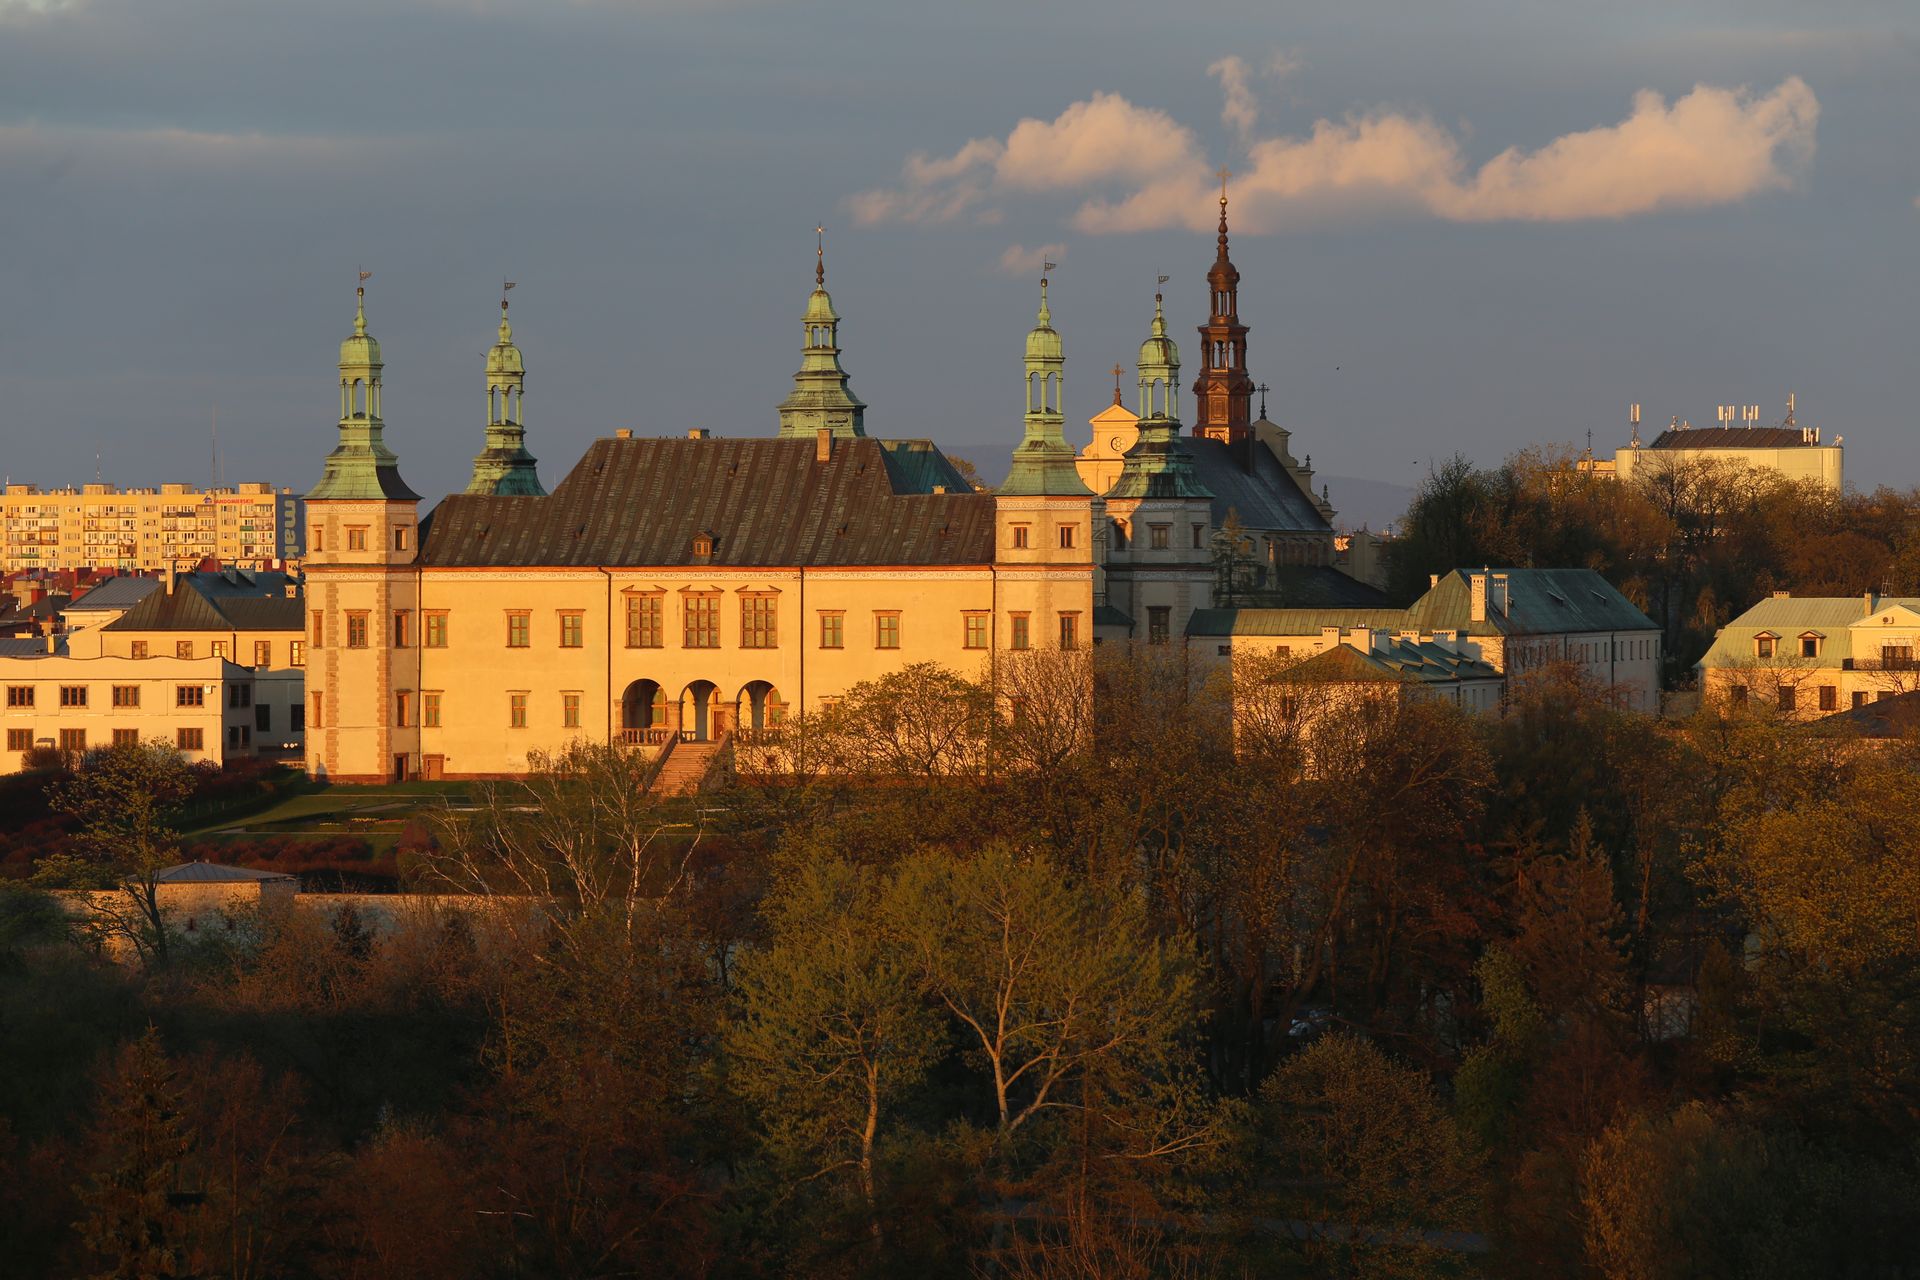 kielce palac biskupow krakowskich katedra img 2900 fot lukasz zarzycki